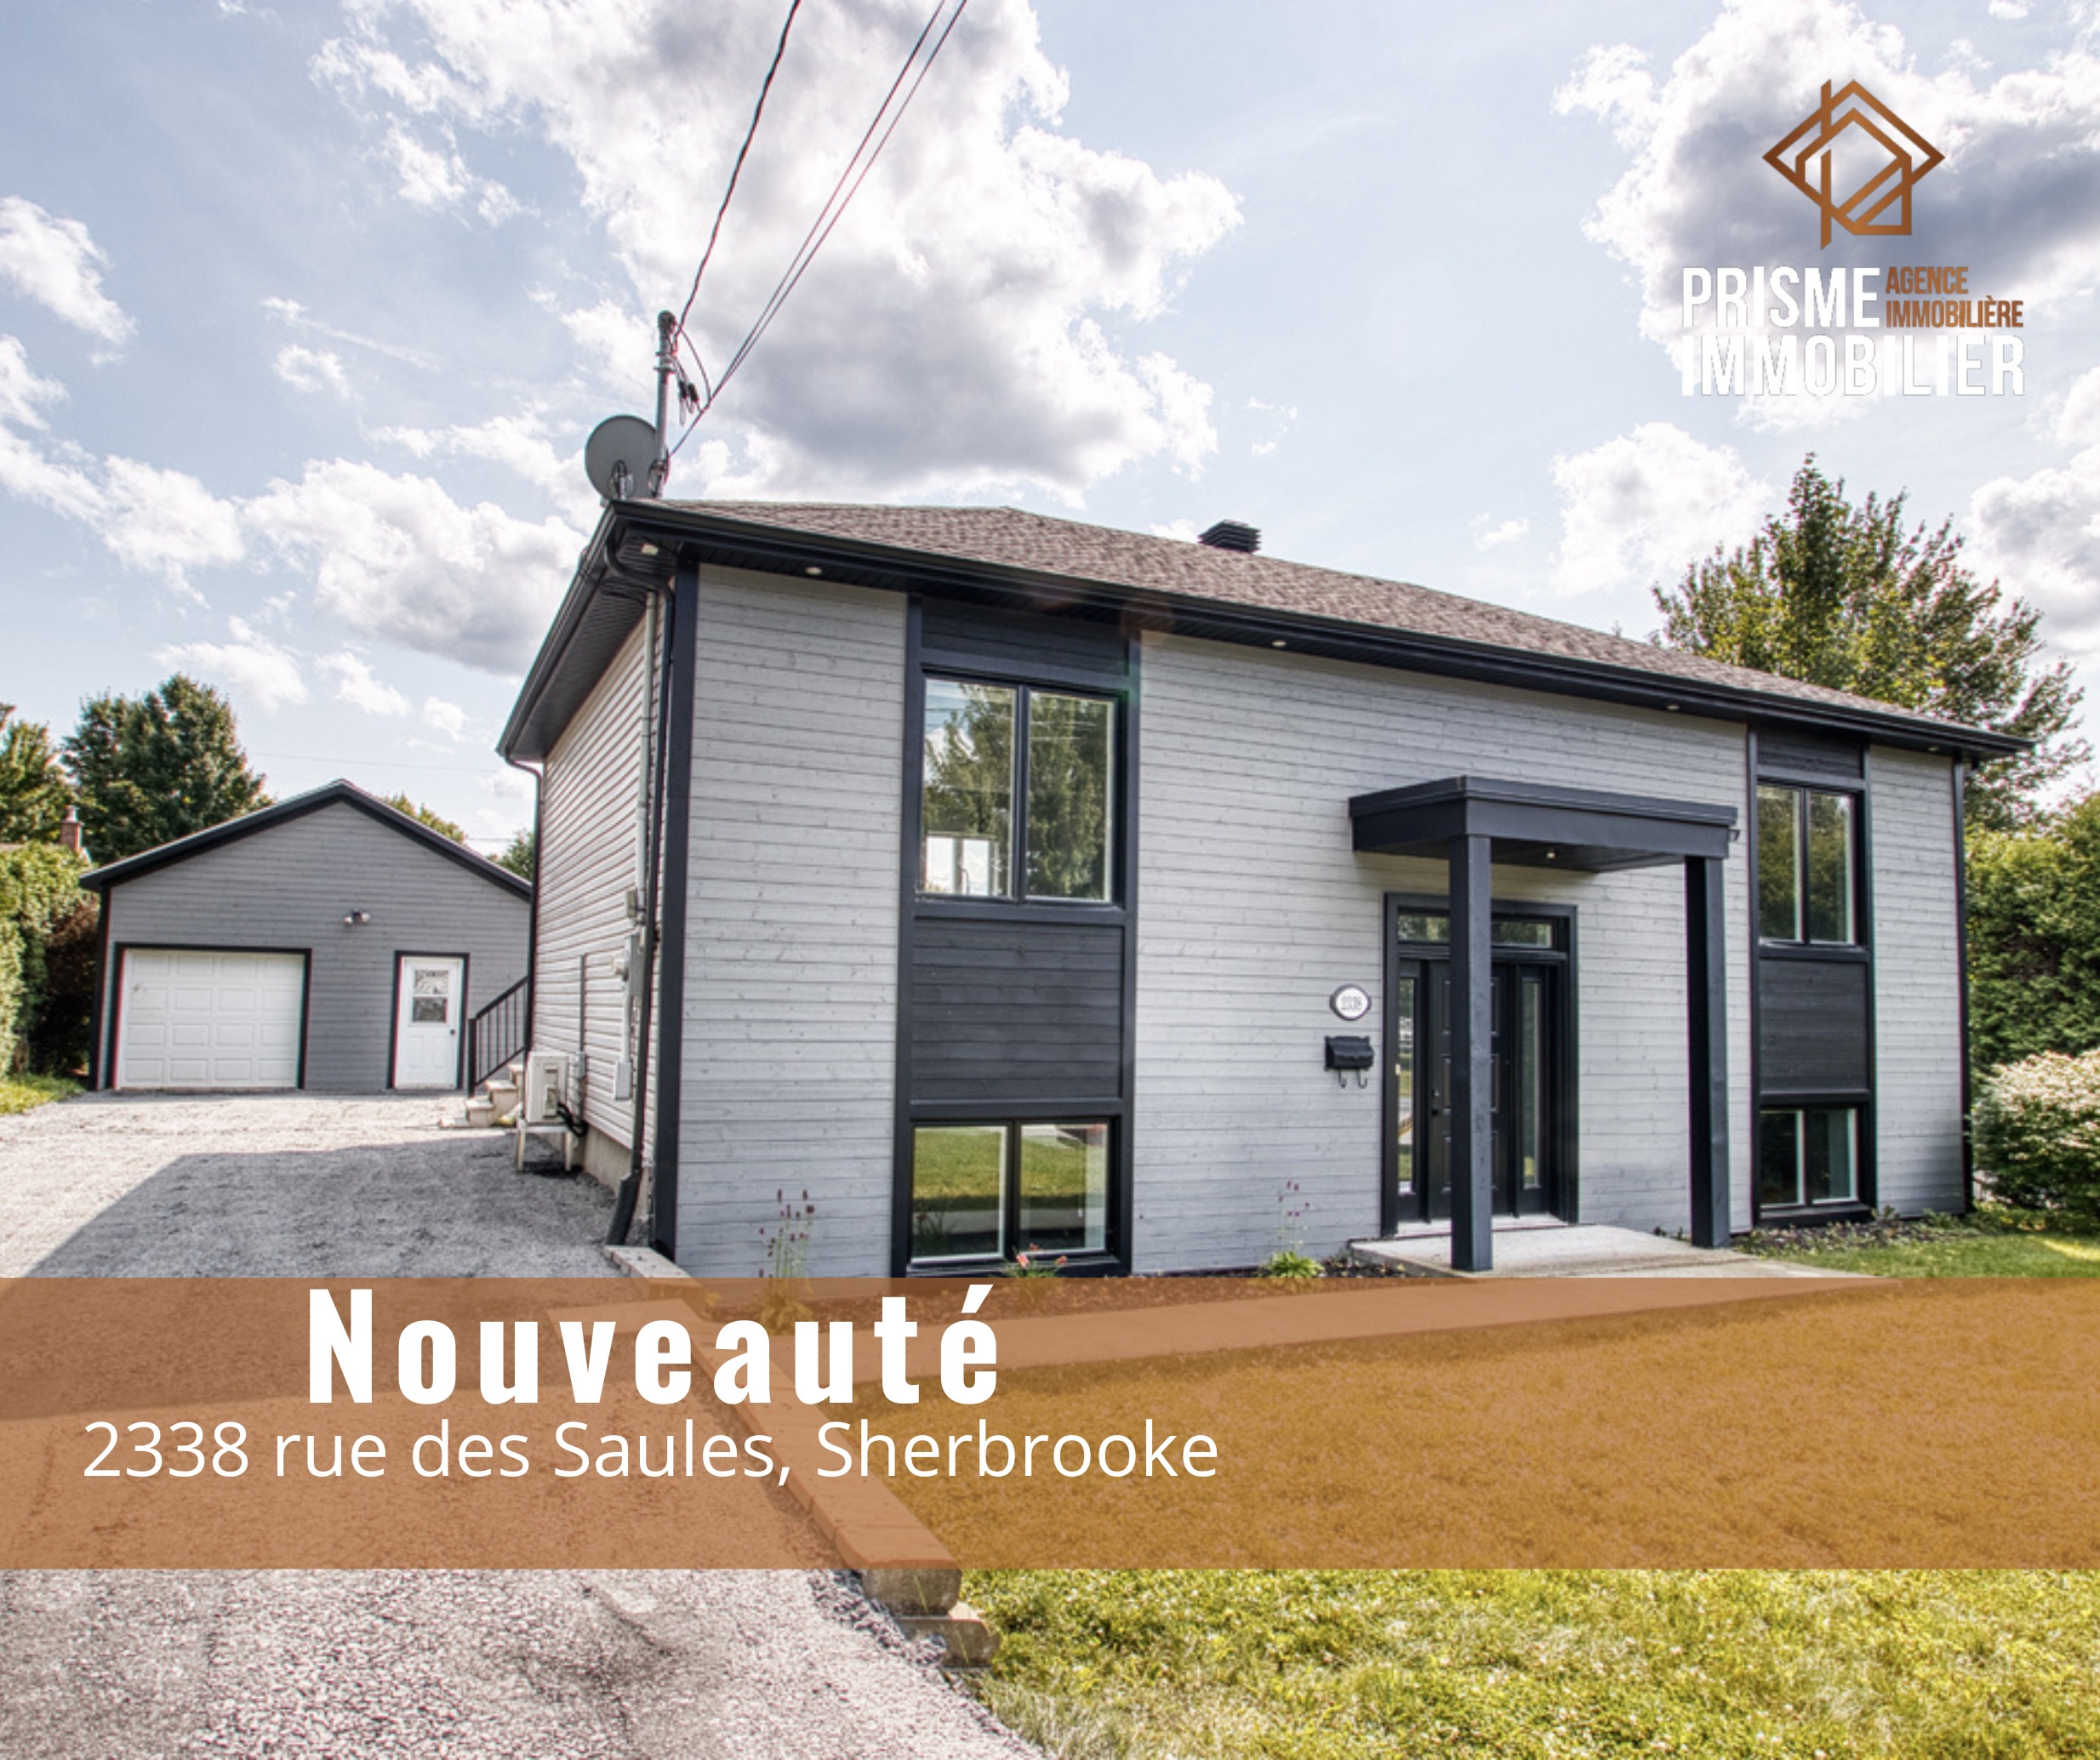 Découvrez cette superbe propriété disponible via notre agence immobilière à Sherbrooke au prix de $450,000 Sherbrooke .